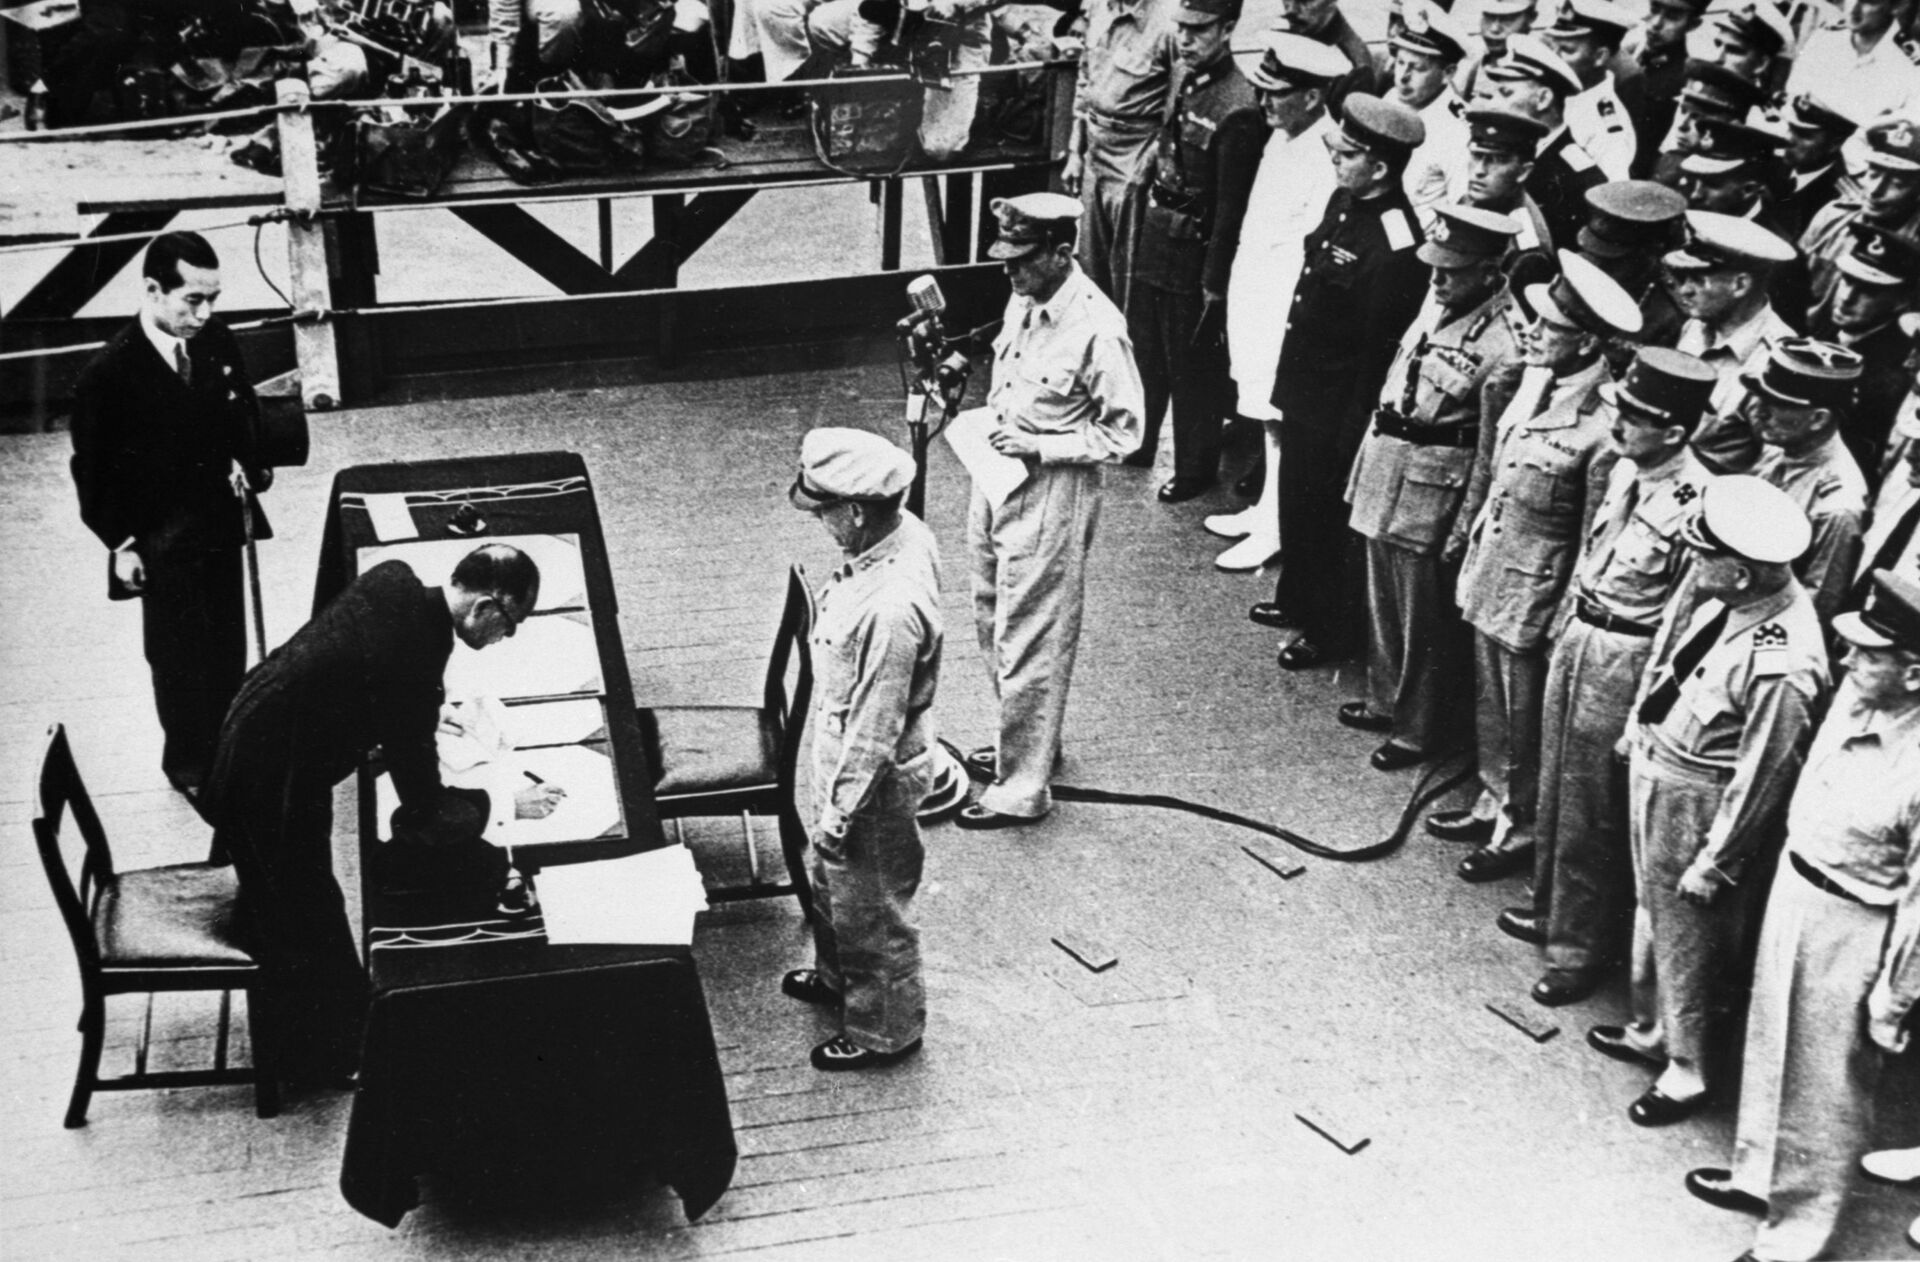 EUA ajudaram criminosos japoneses em troca de informação sobre guerra biológica, aponta arquivo - Sputnik Brasil, 1920, 17.08.2021